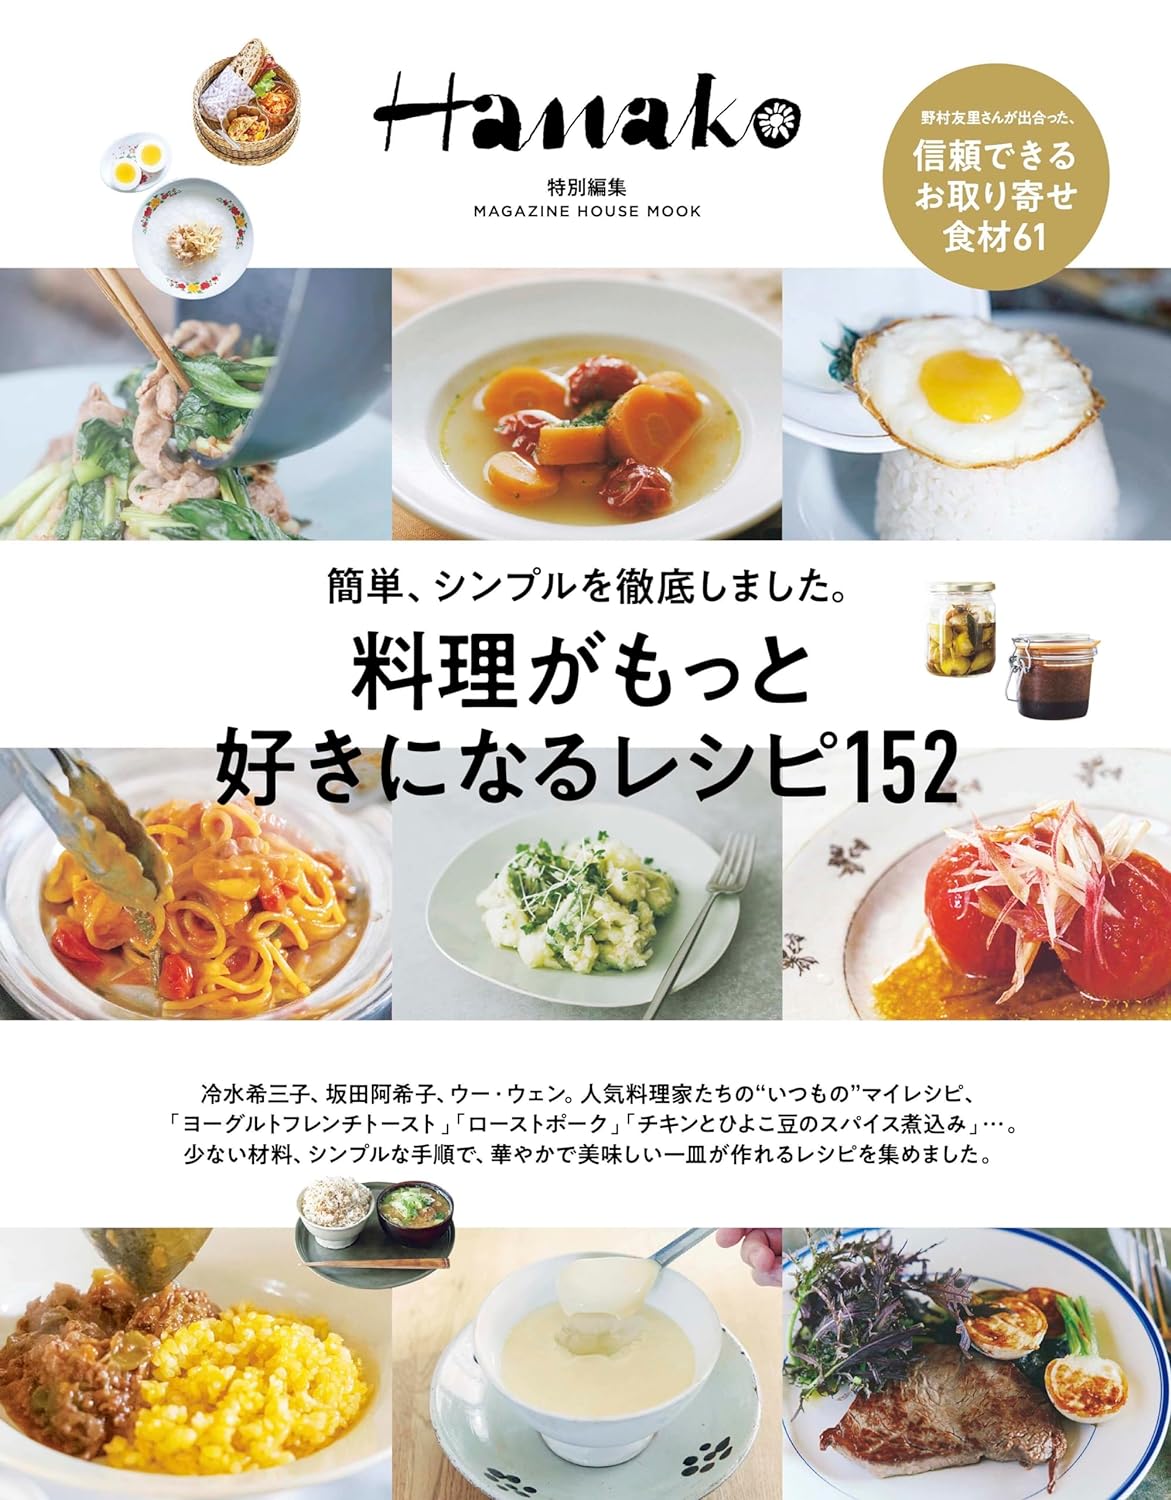 Hanako特別編集　料理がもっと好きになるレシピ152 (MAGAZINE HOUSE MOOK)